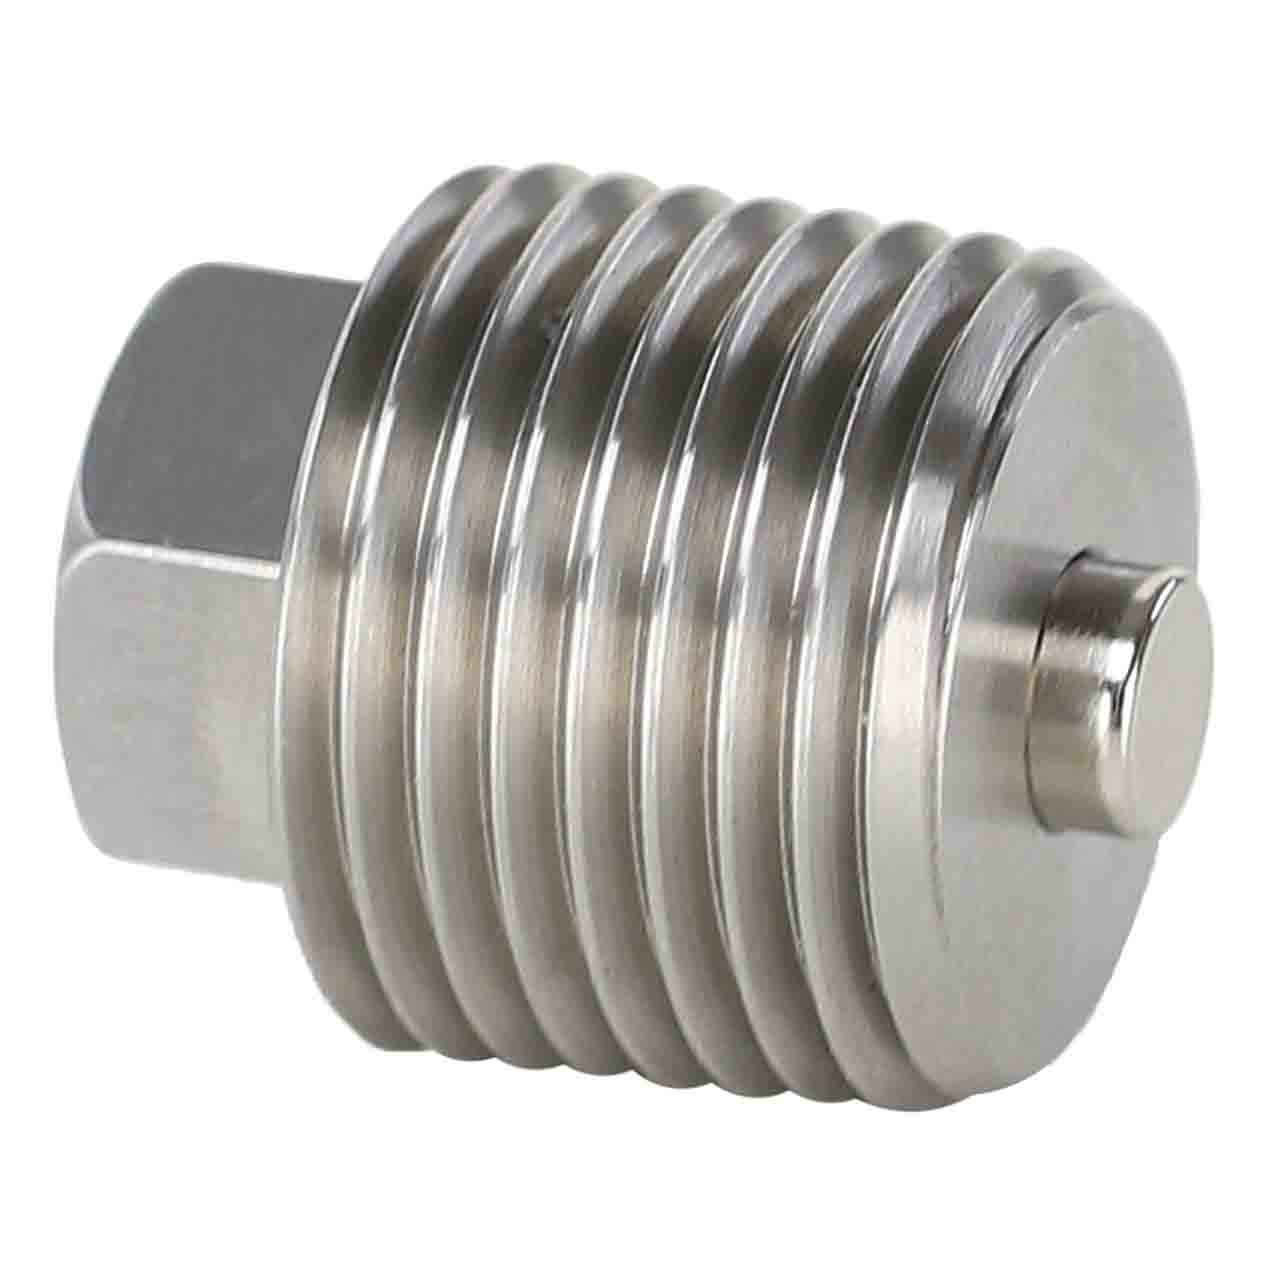 25-139-61-S for Kohler - Stainless Steel Oil Drain Plug with Neodymium Magnet